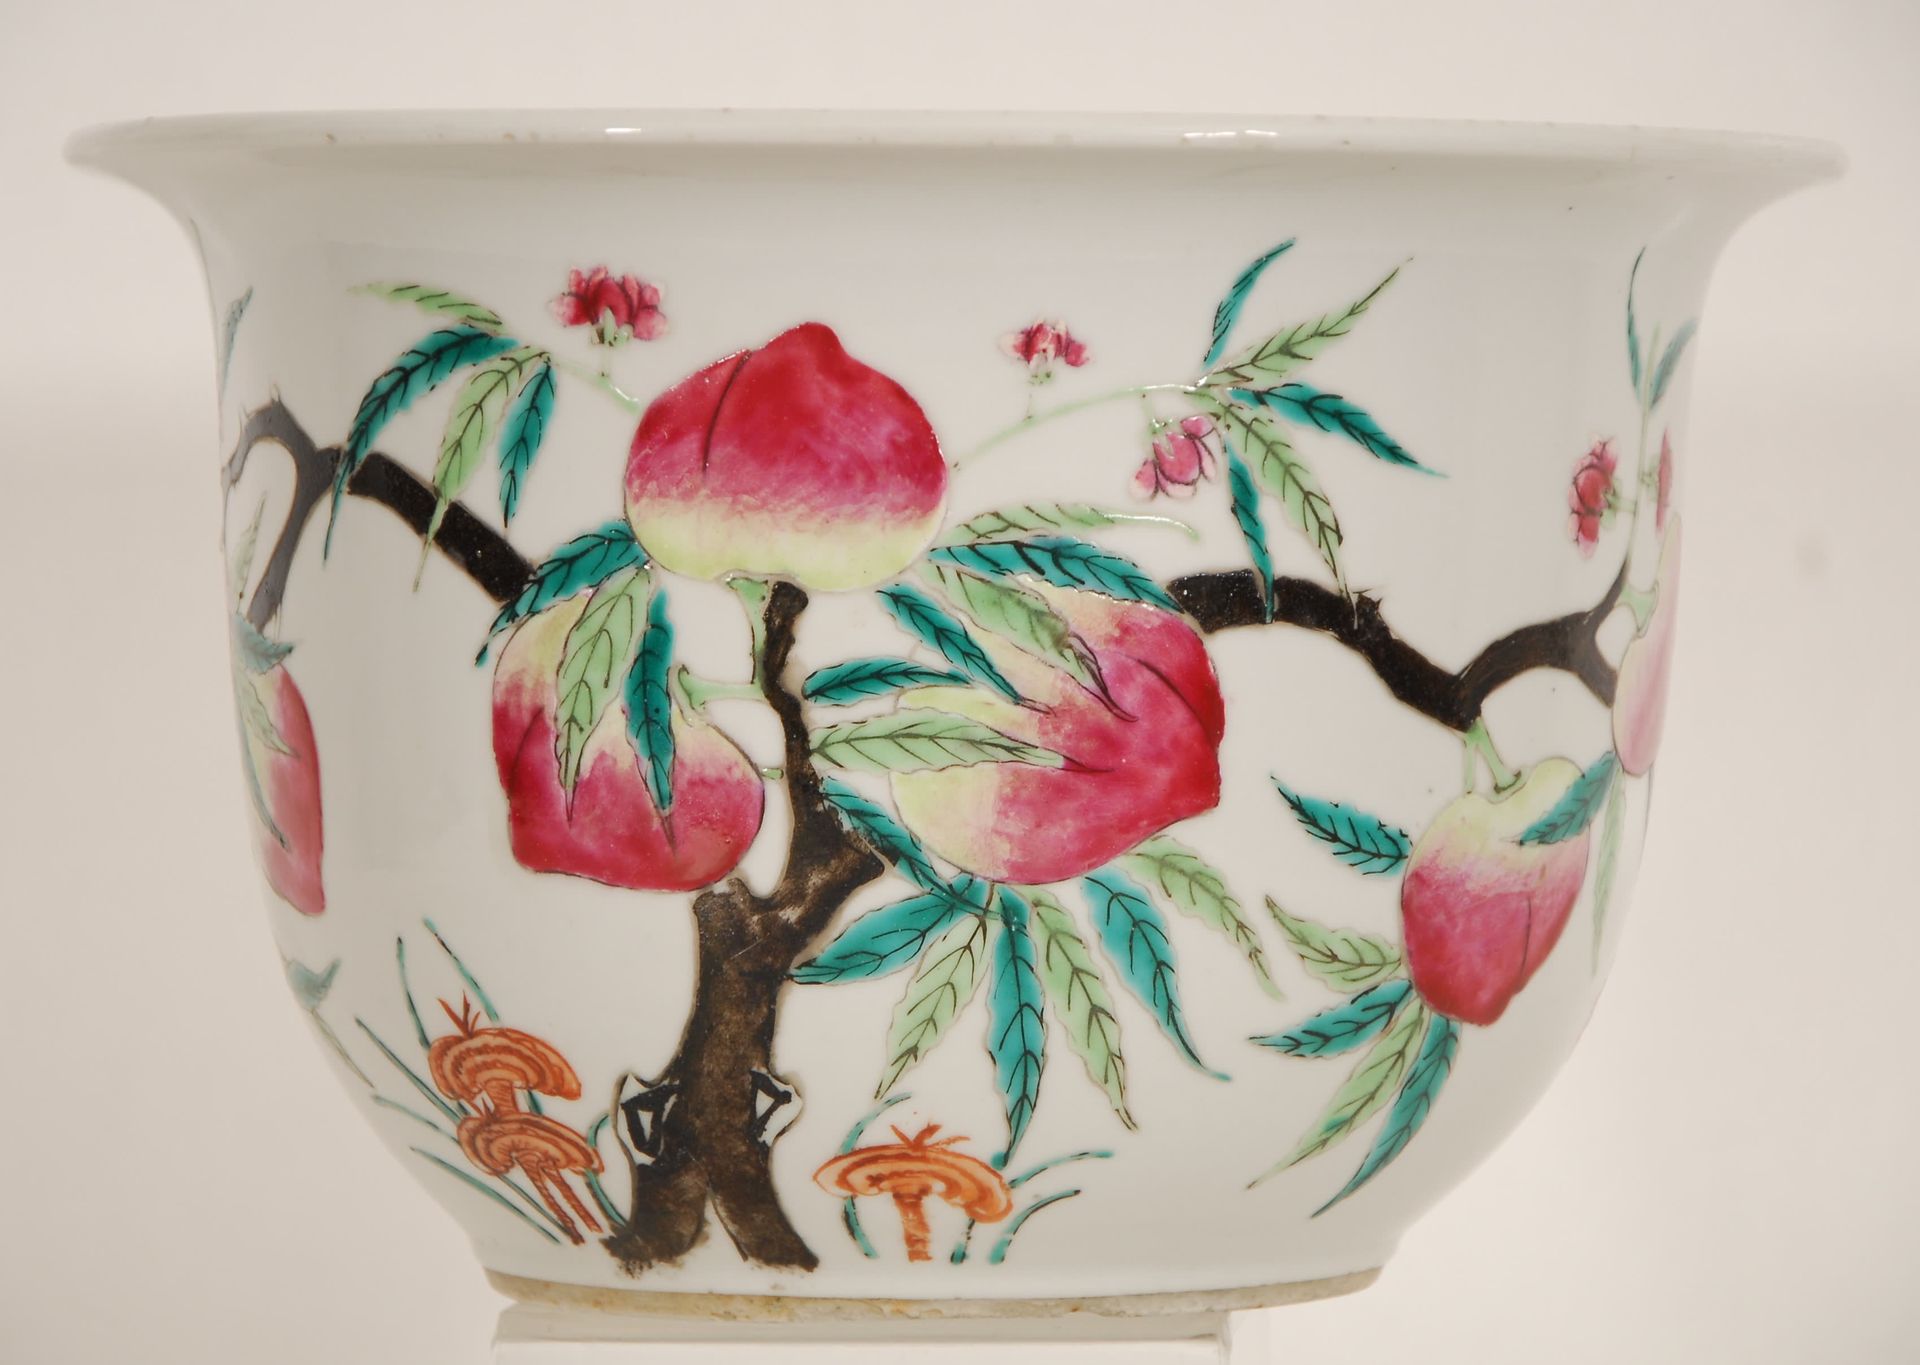 Null Famille rose 'peach' cachepot
China, Qing.
H. 17 cm; diam. 27 cm.